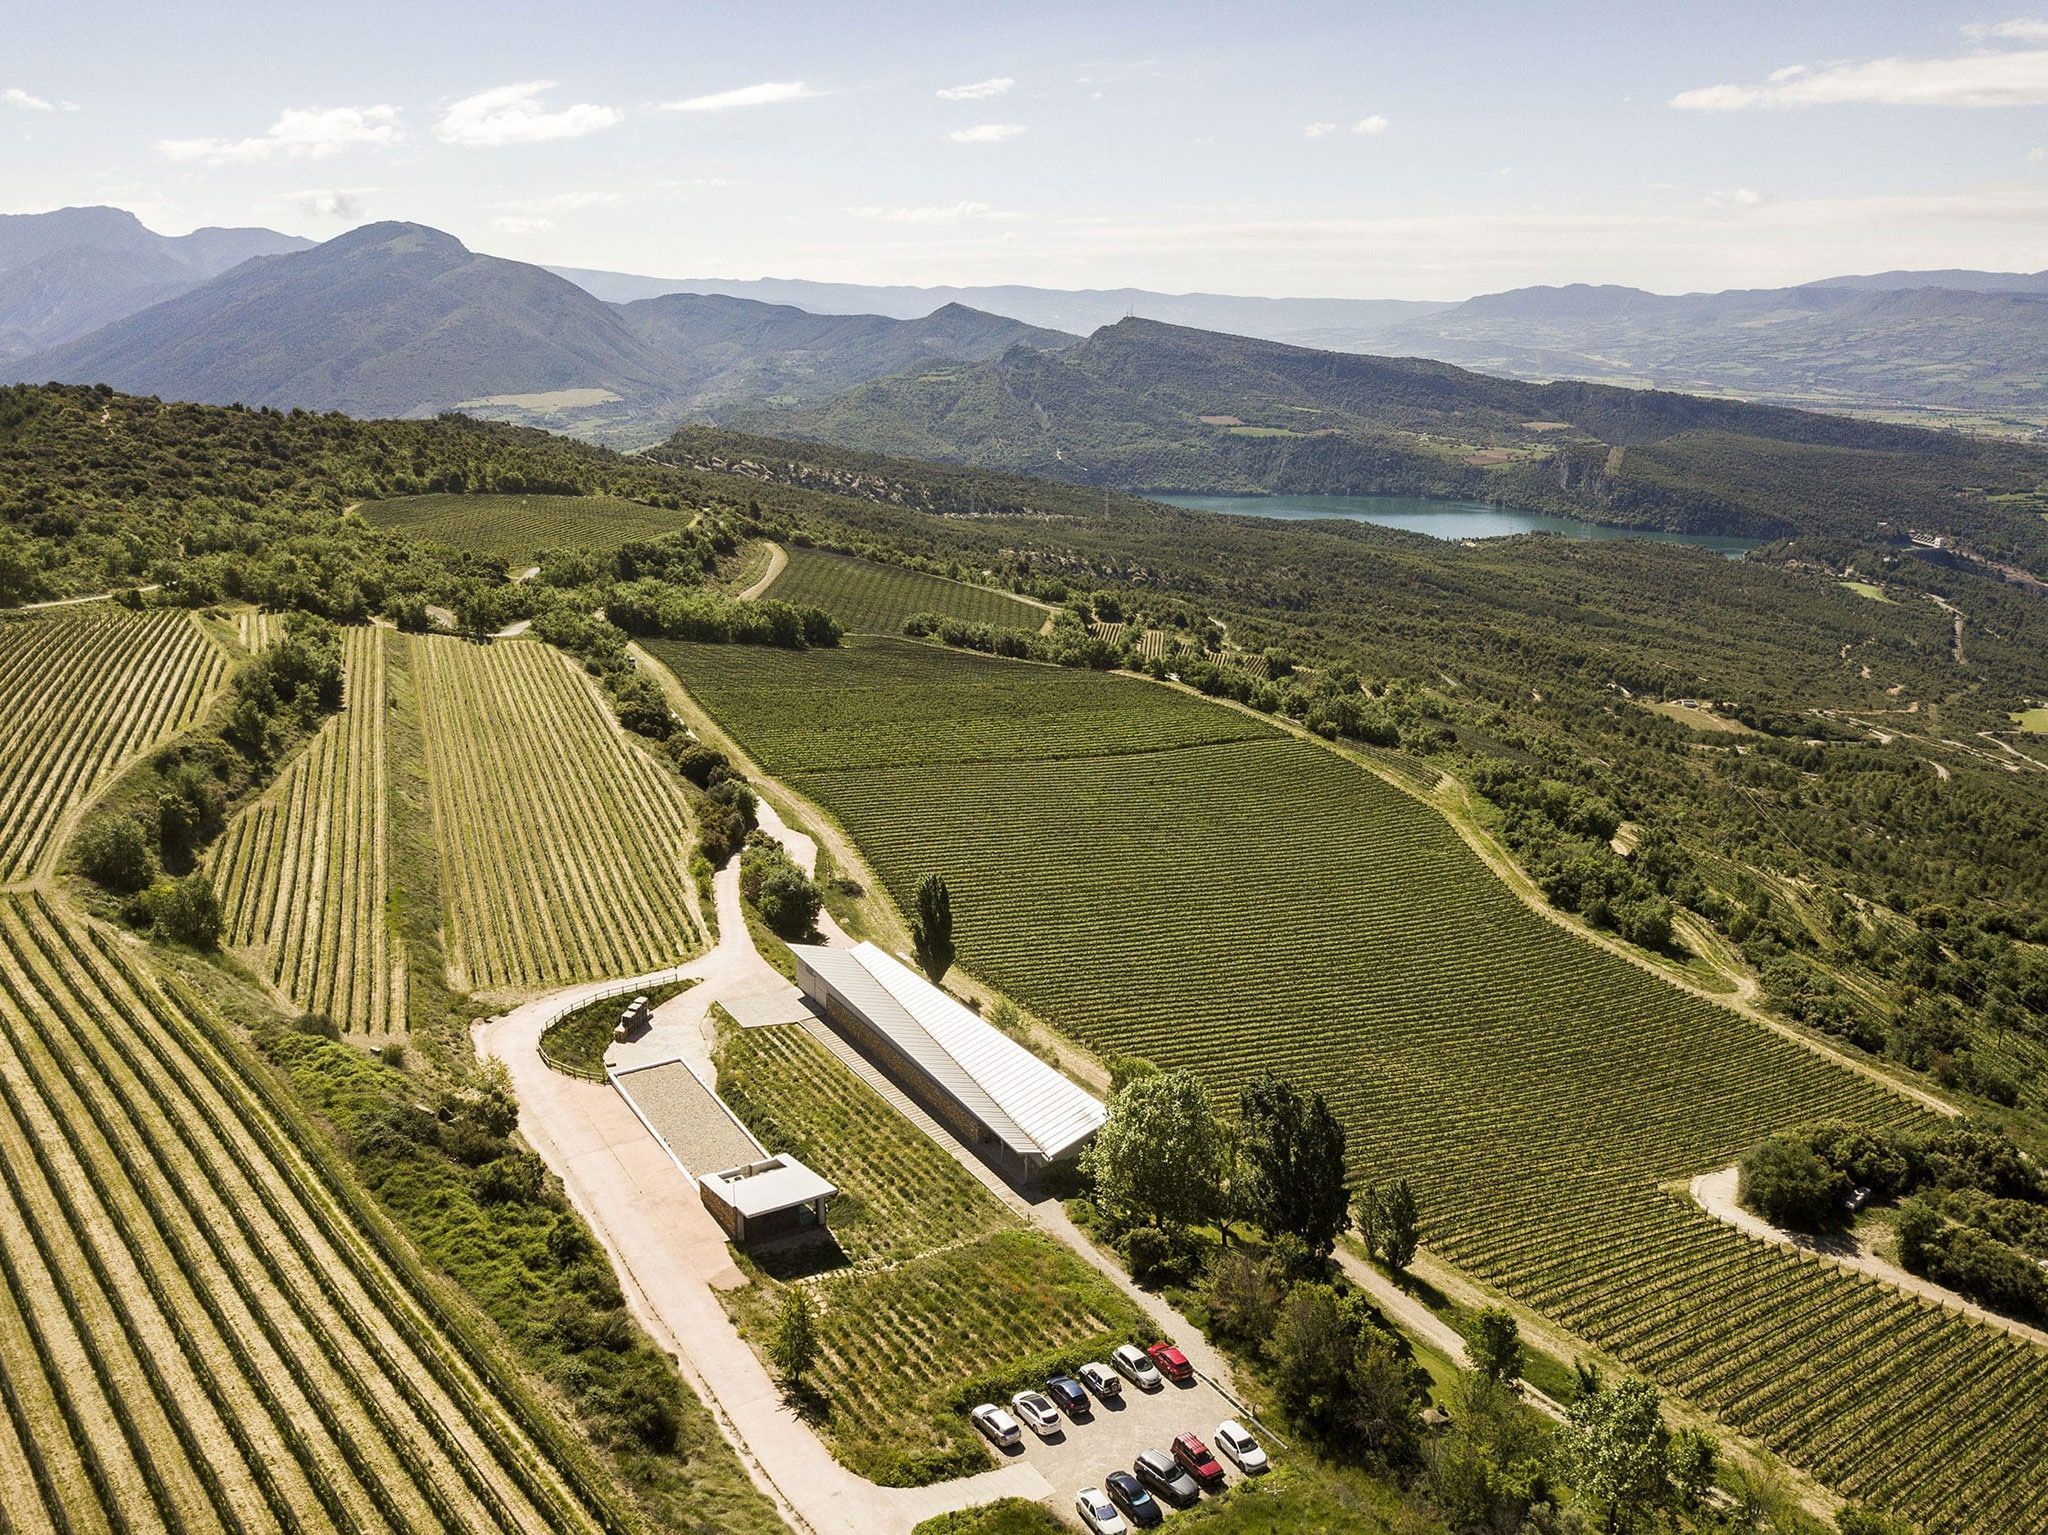 Imagen aérea de la bodega y los viñedos con las sierras de Sant Corneli y Carreu